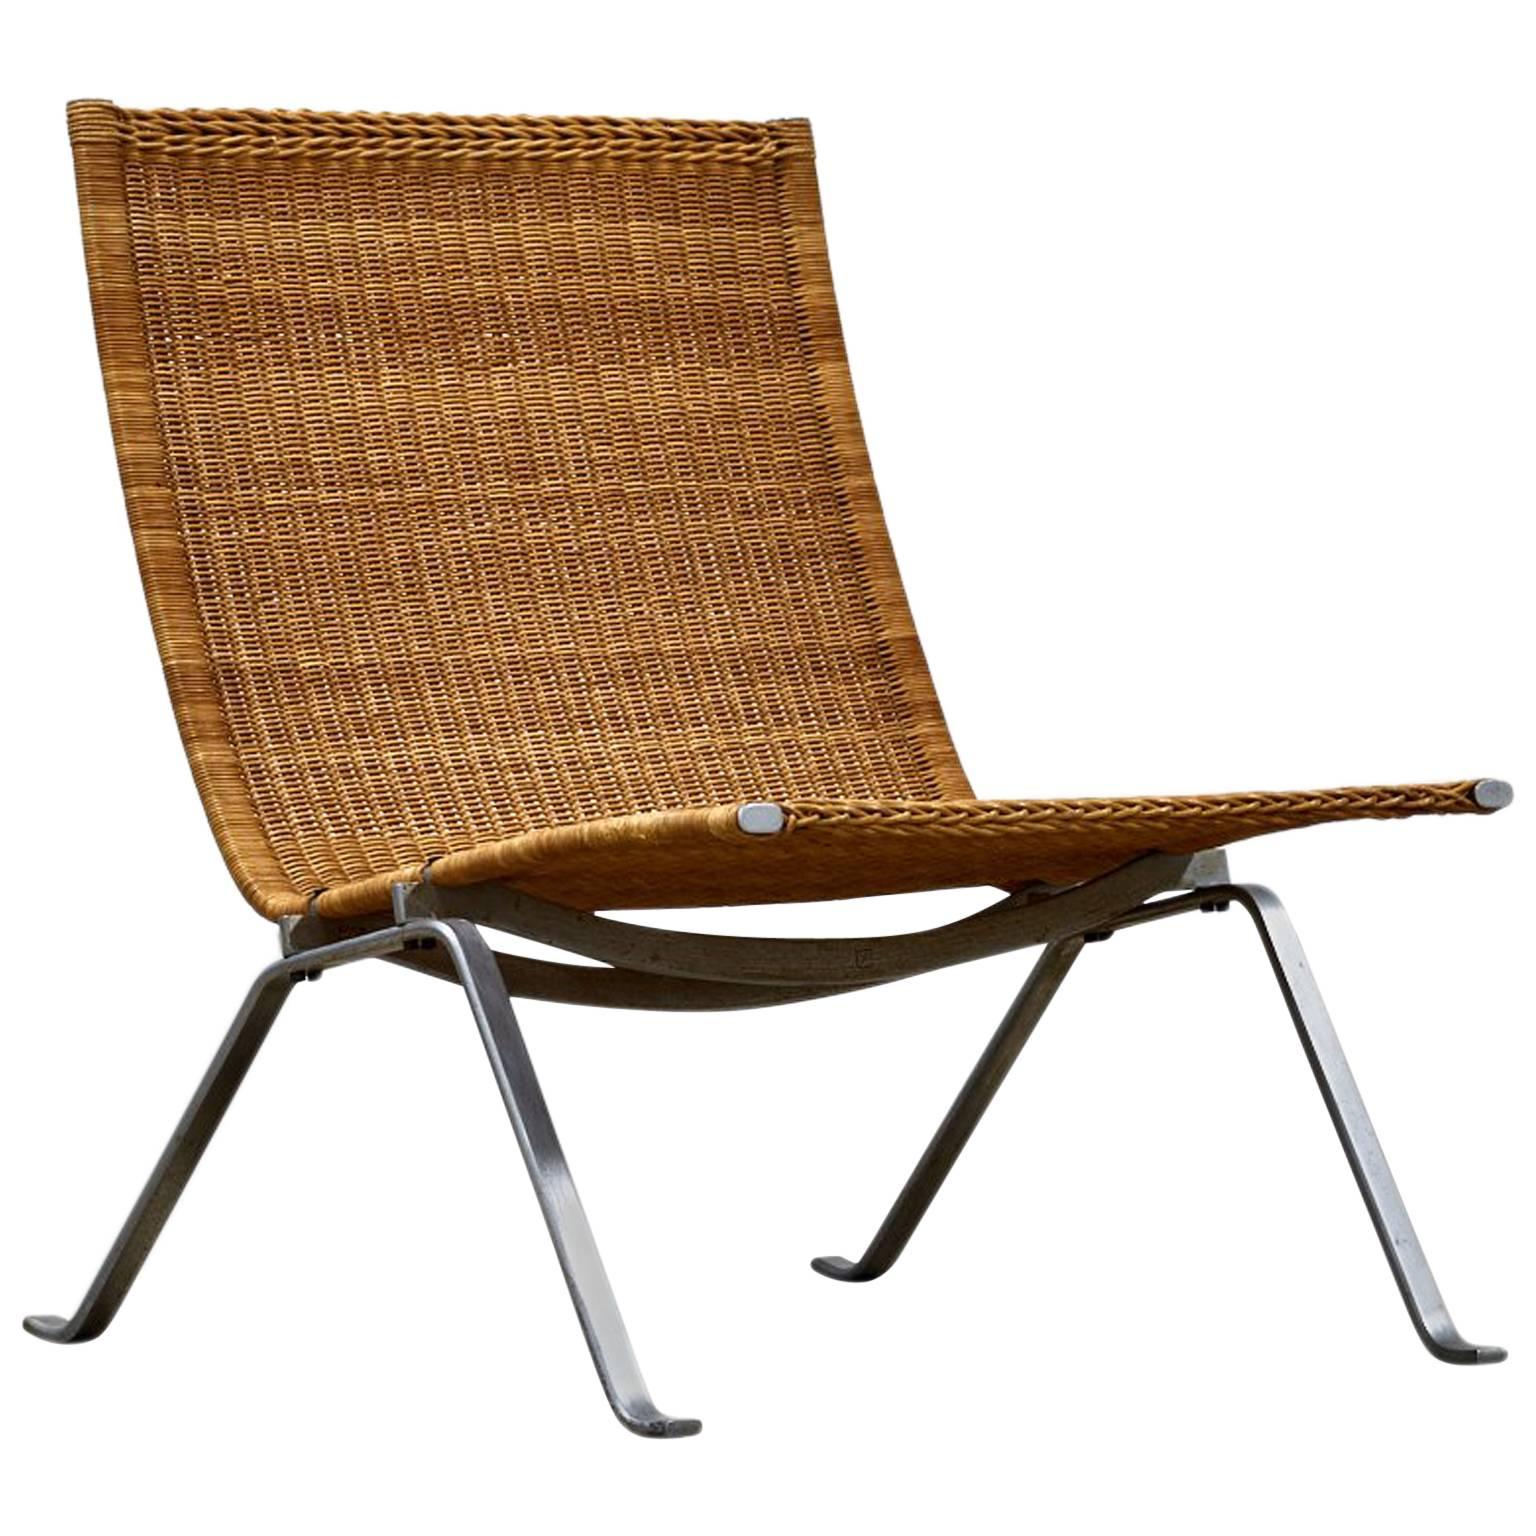 Poul Kjaerholm for E Kold Christensen Chair, Model PK-22 in Cane, 1950s